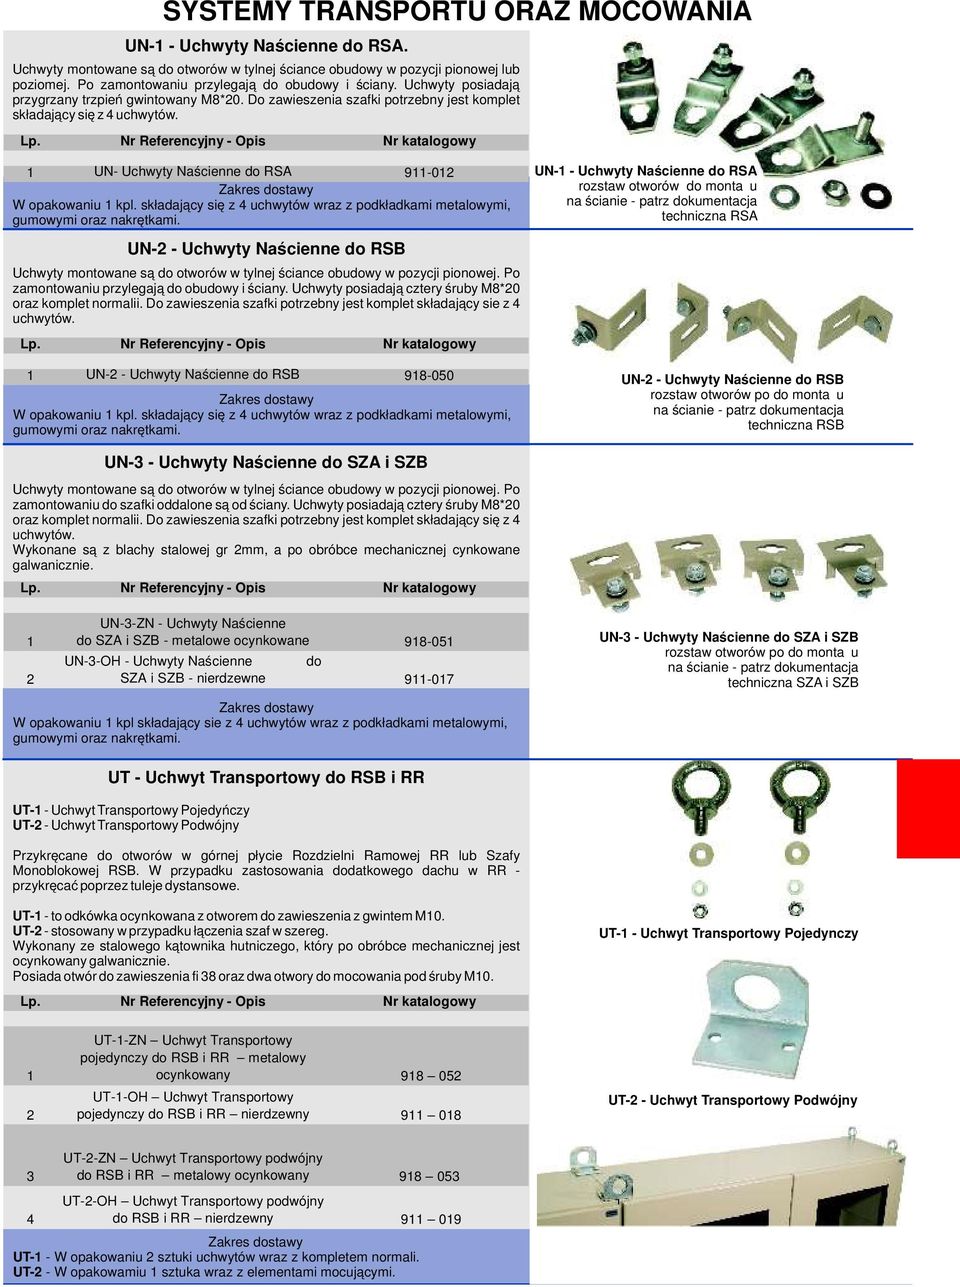 UN- Uchwyty Naścienne do RSA 9-0 W opakowaniu kpl. składający się z 4 uchwytów wraz z podkładkami metalowymi, gumowymi oraz nakrętkami.